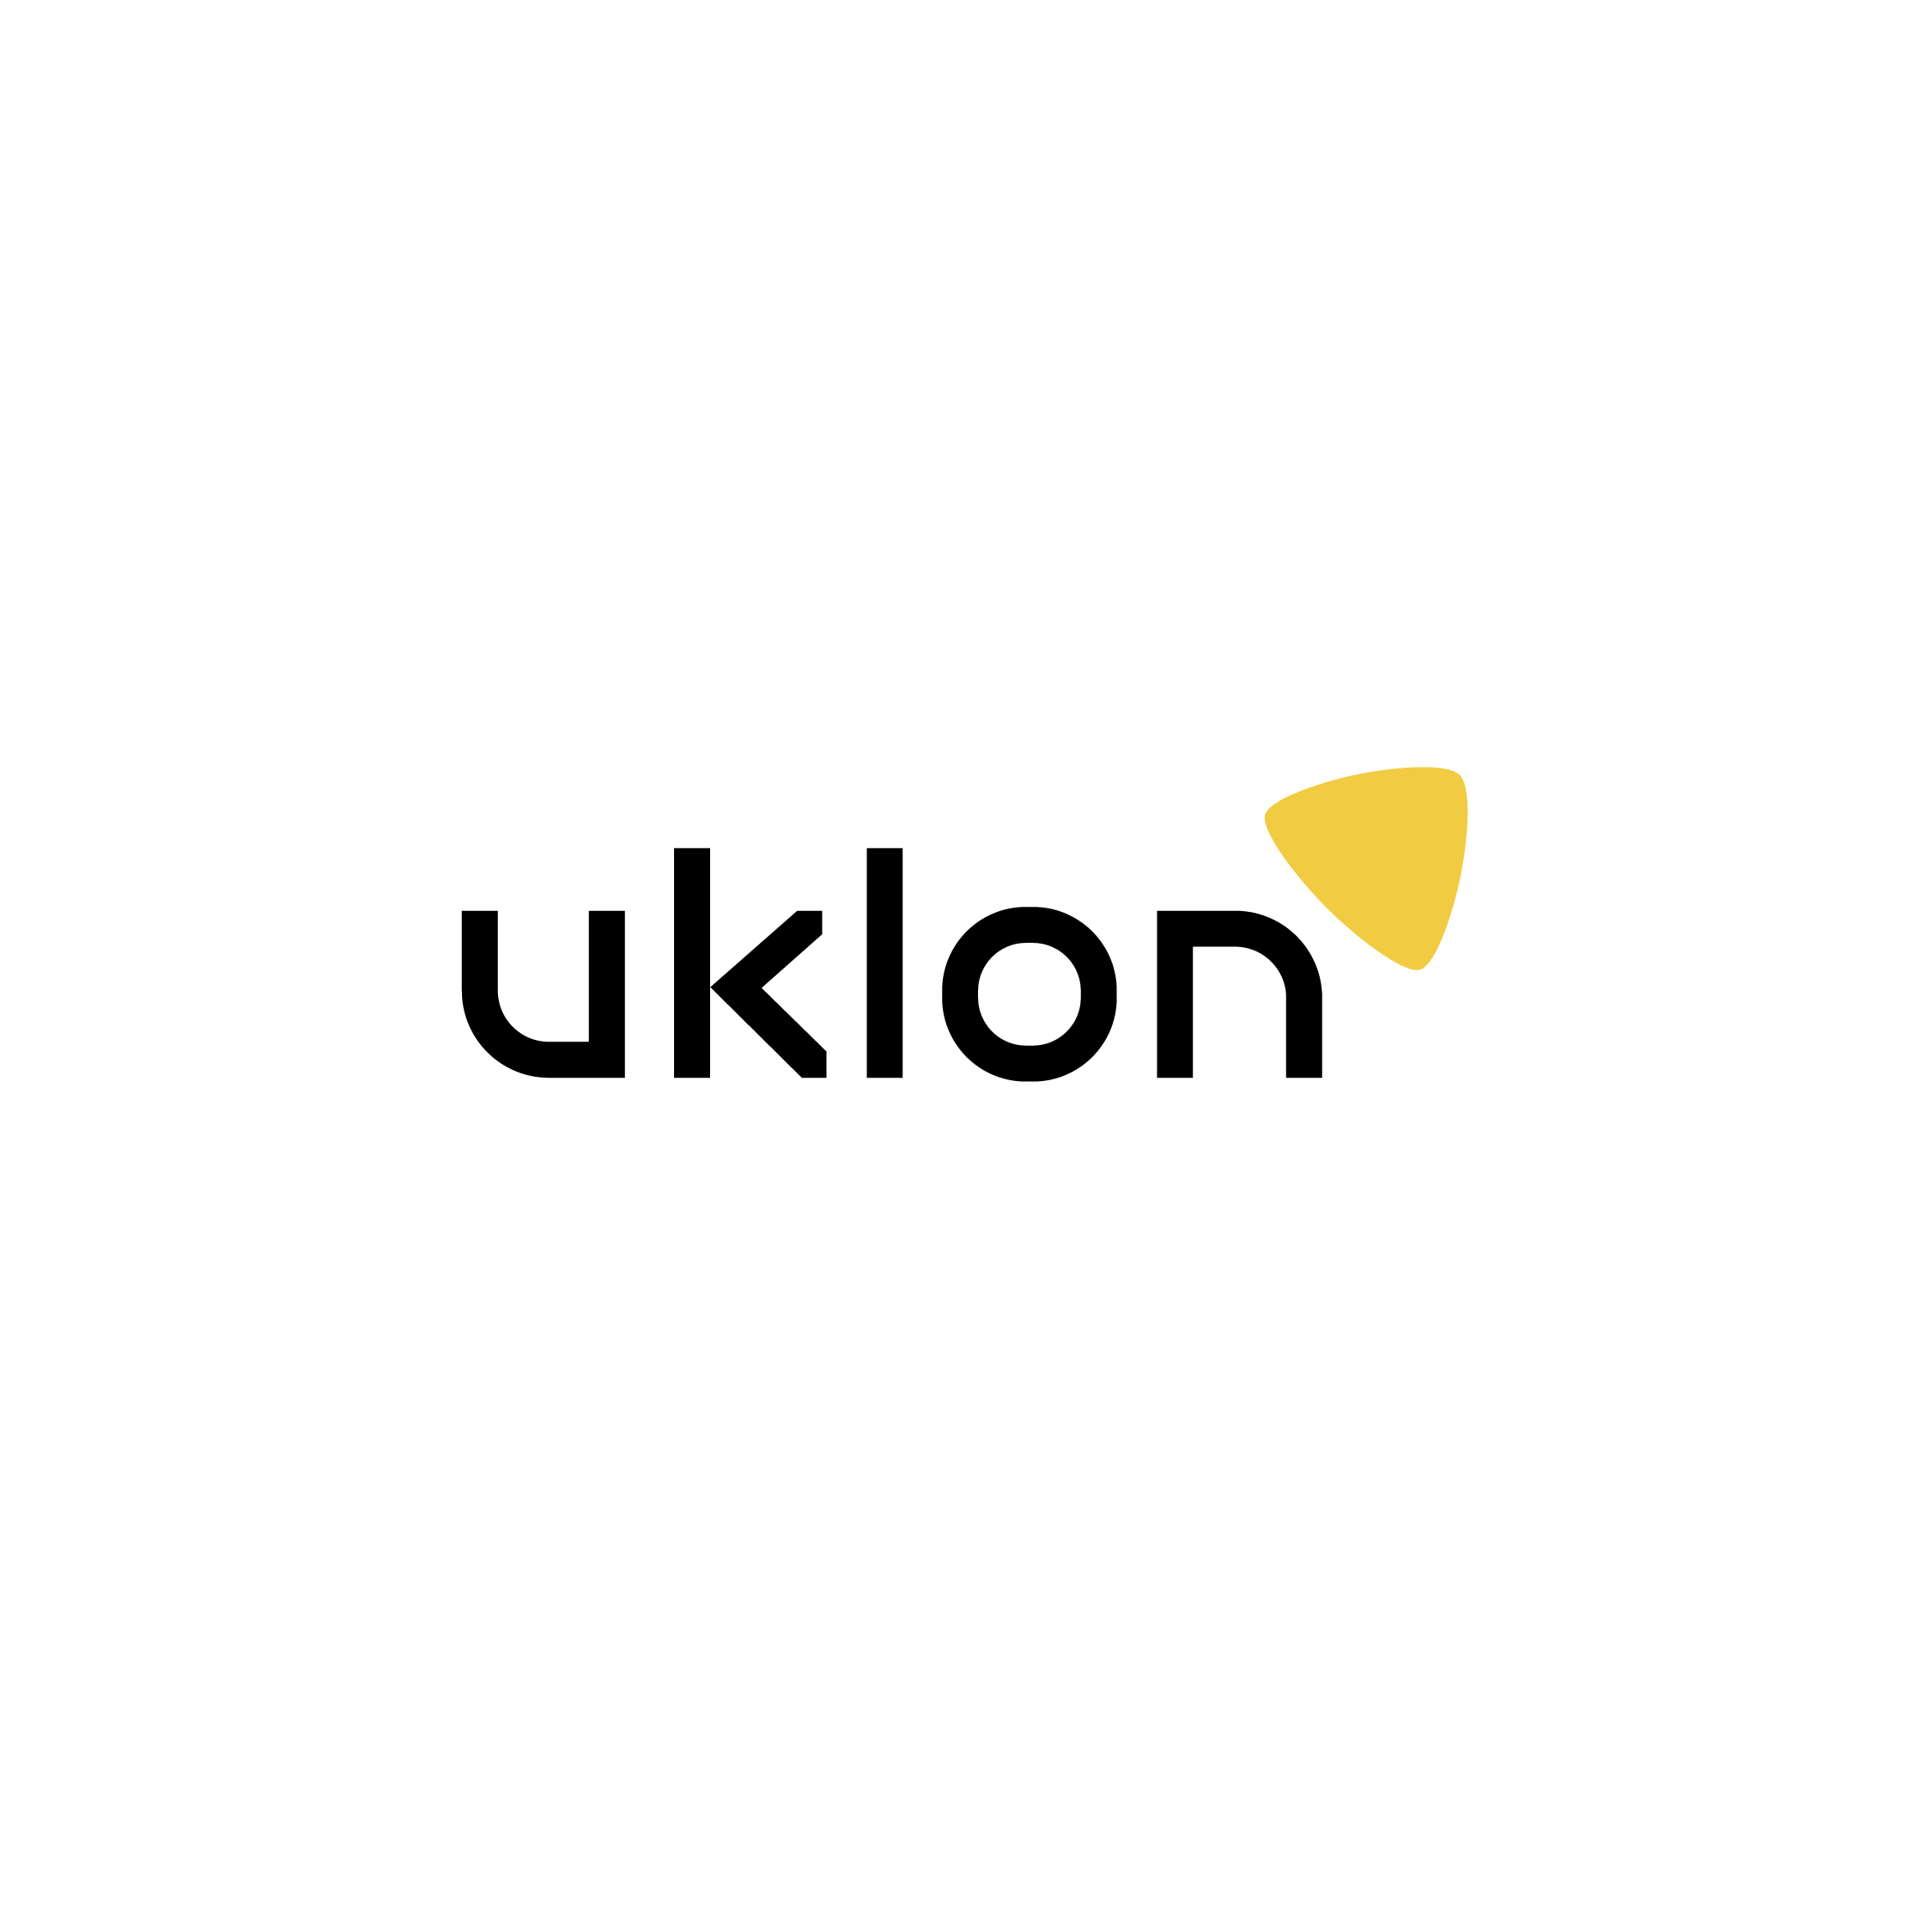 Uklon представил новый логотип и фирменный стиль, украинский сервис вызова такси готовится к экспансии